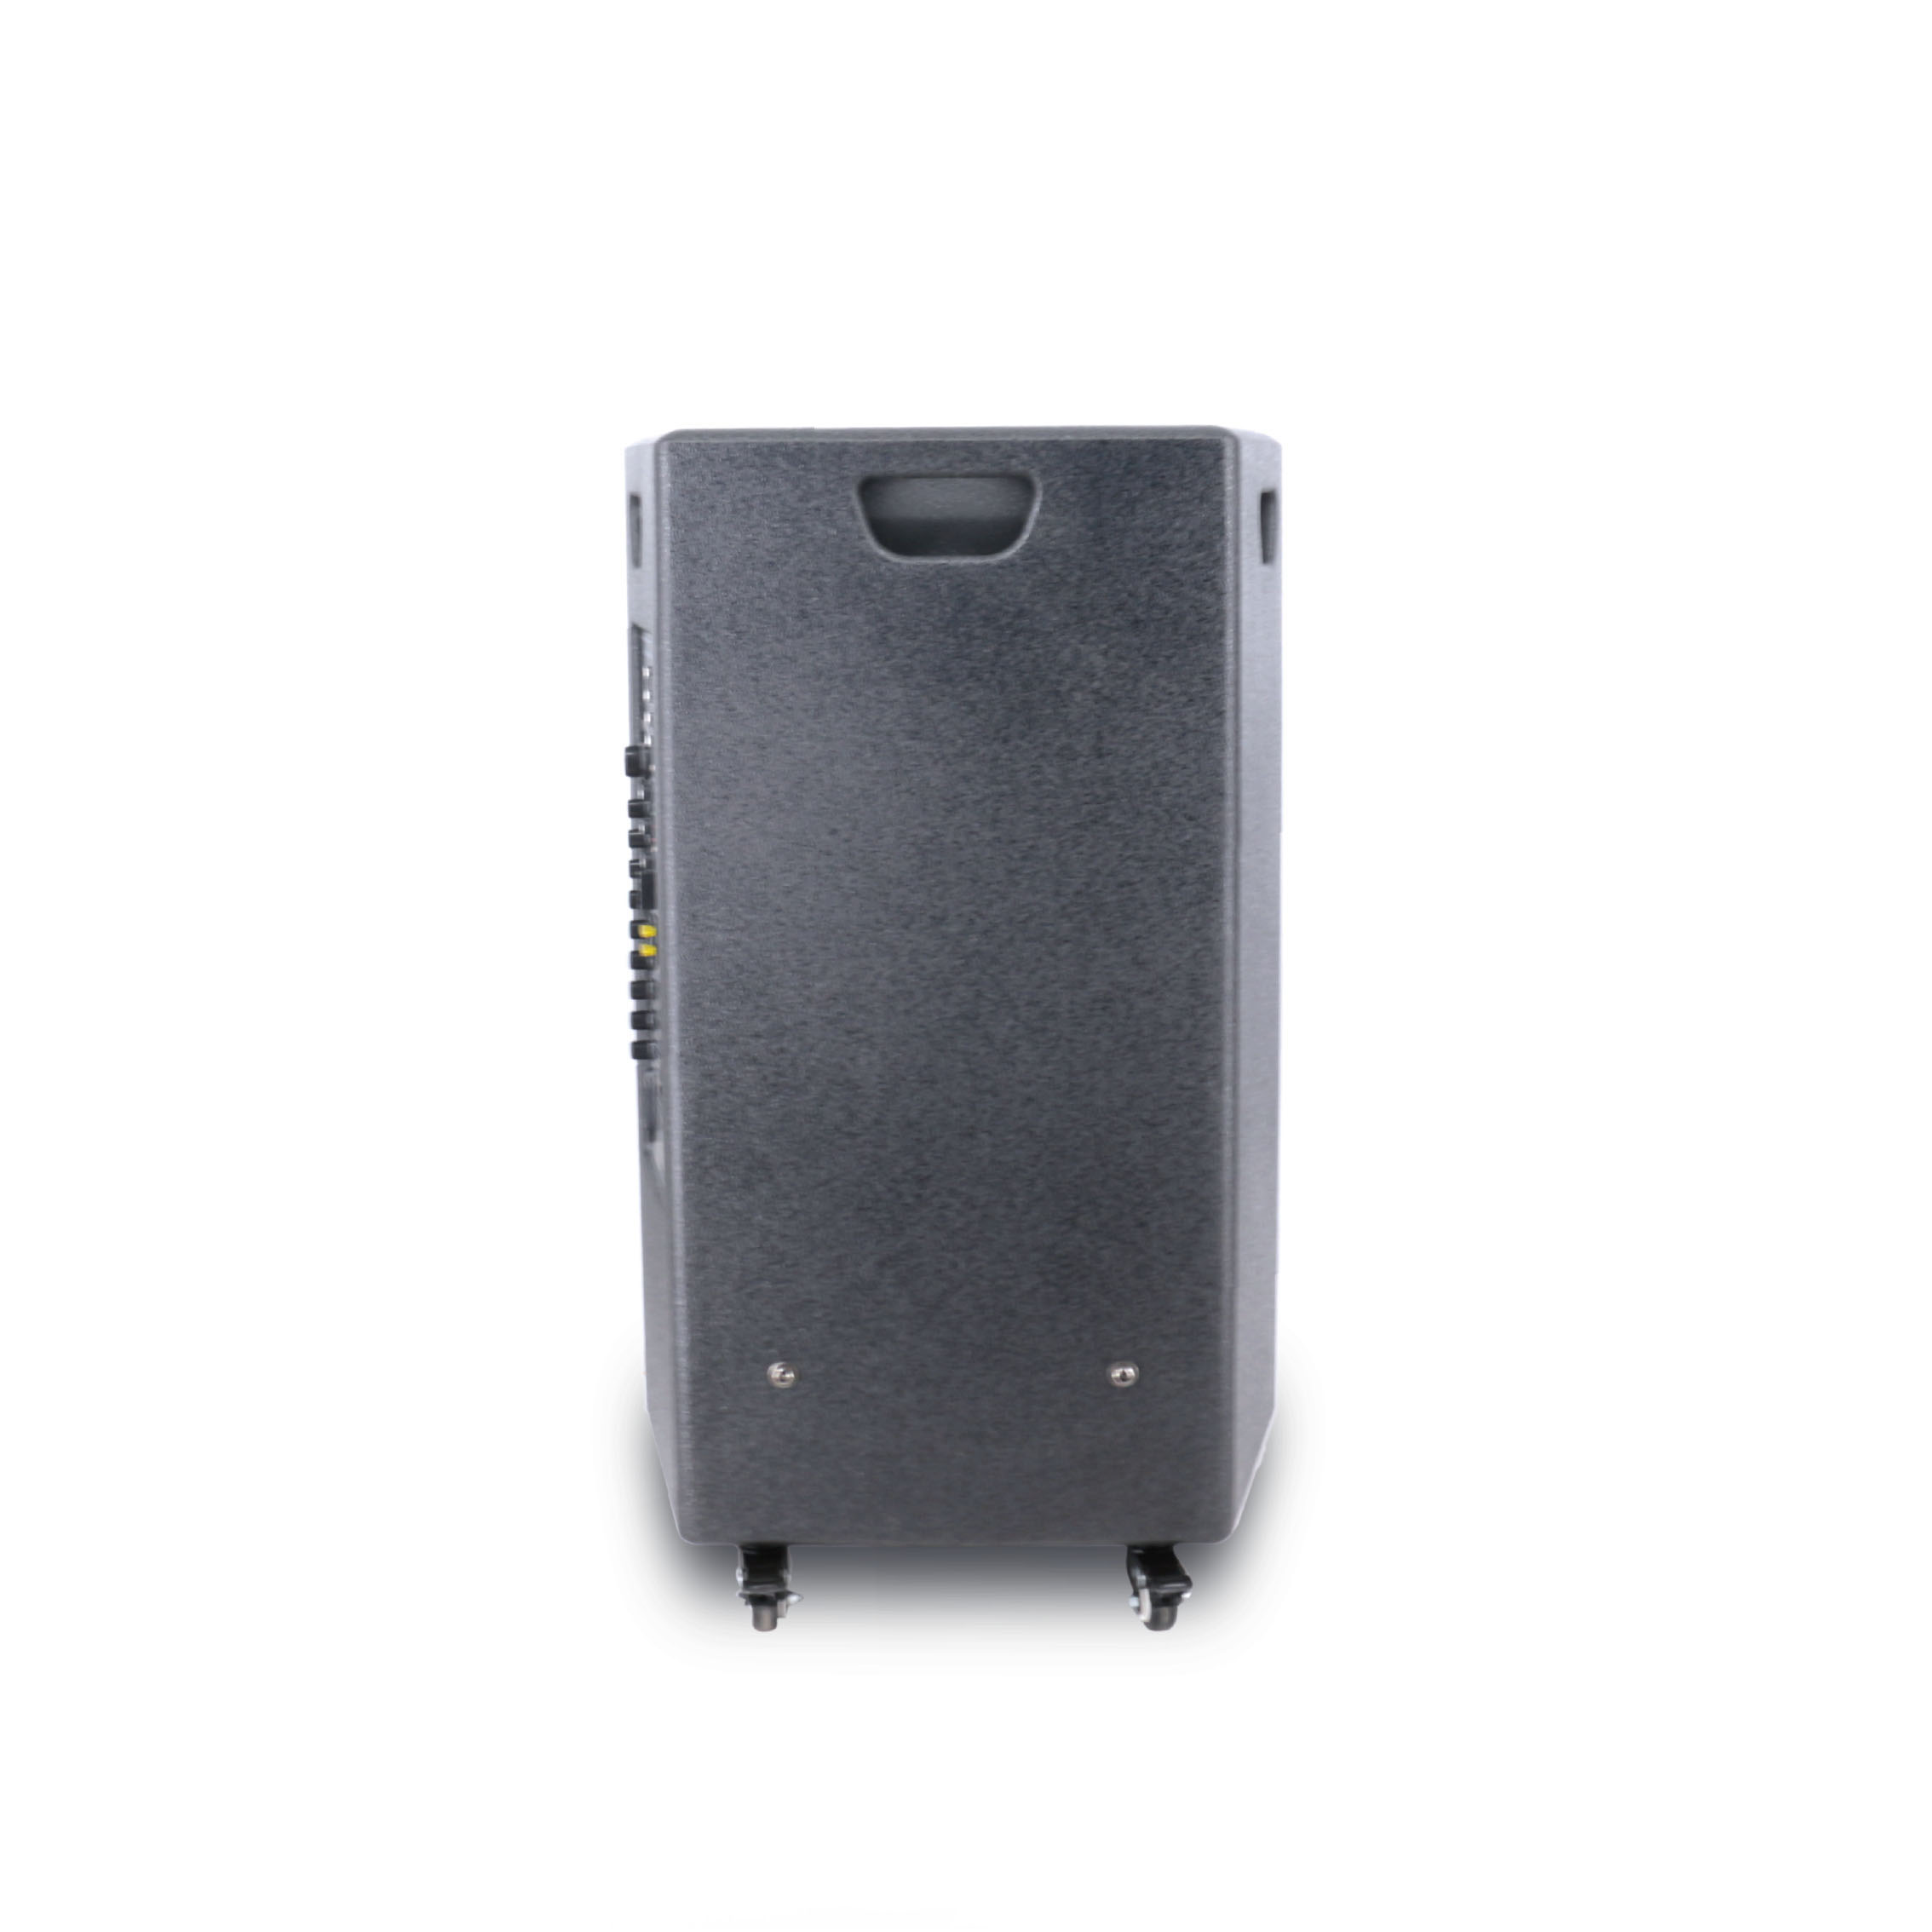 Portable Active Amplifier Wireless Rechargeable Waterproof Speaker